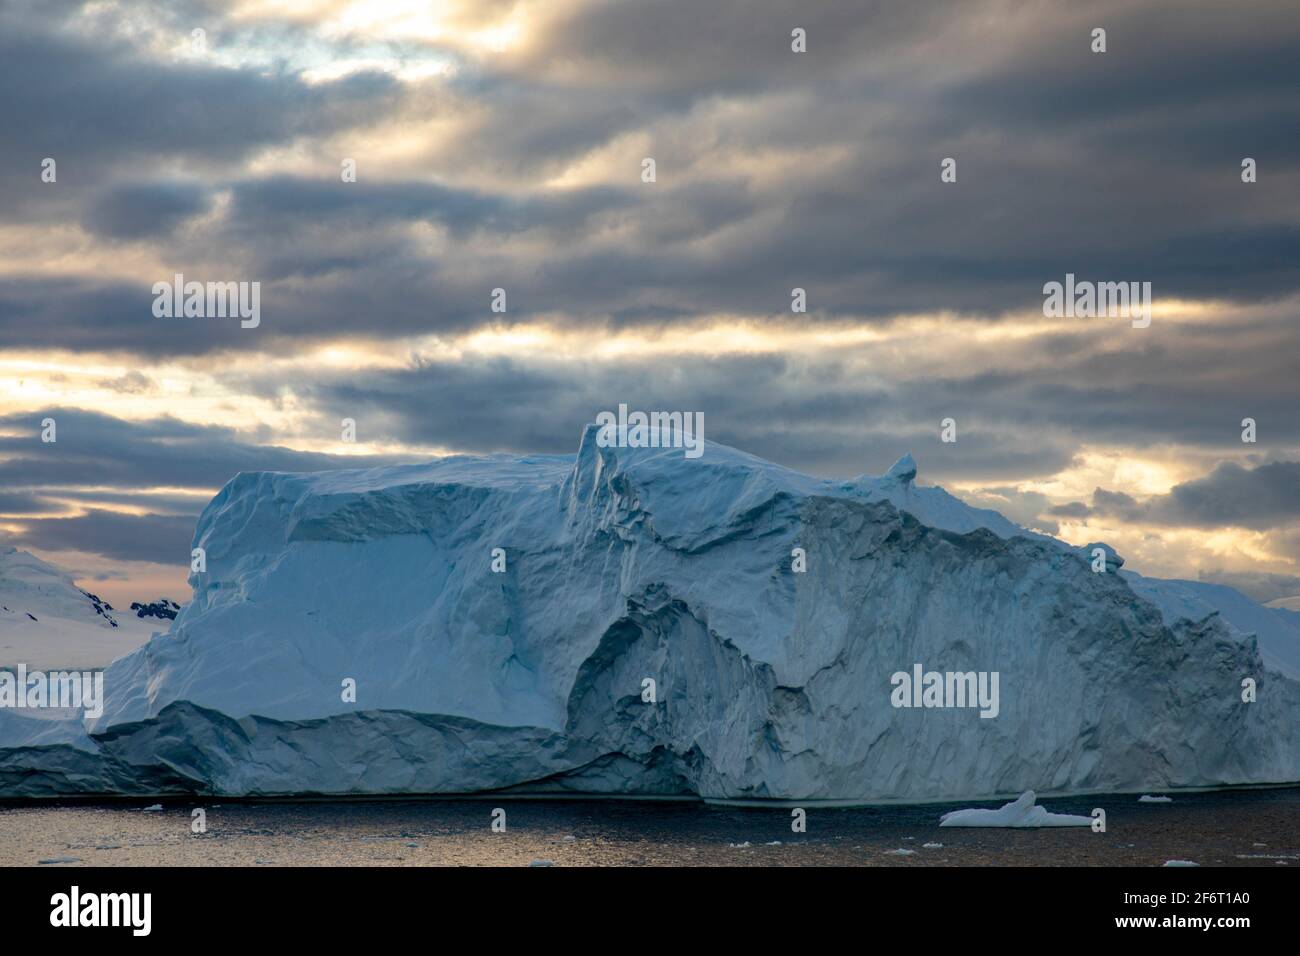 Les rayons chauds du soleil à travers la couverture nuageuse créent une belle lumière sur l'iceberg près du pôle Sud. Banque D'Images